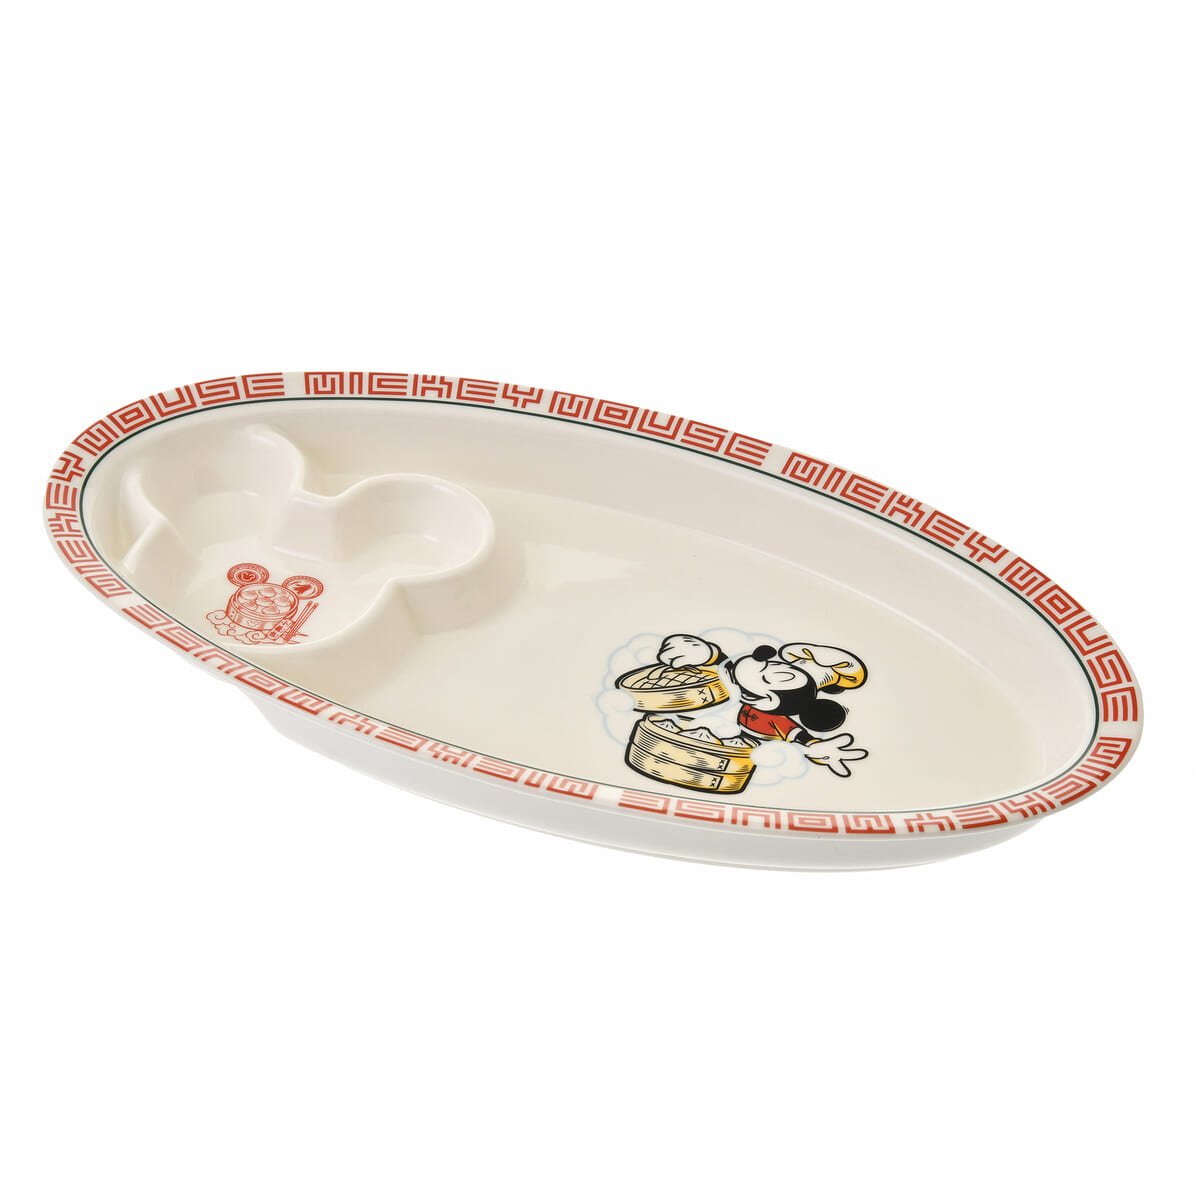 ミッキー プレート 餃子皿 Disney Chinese Restaurant Collection